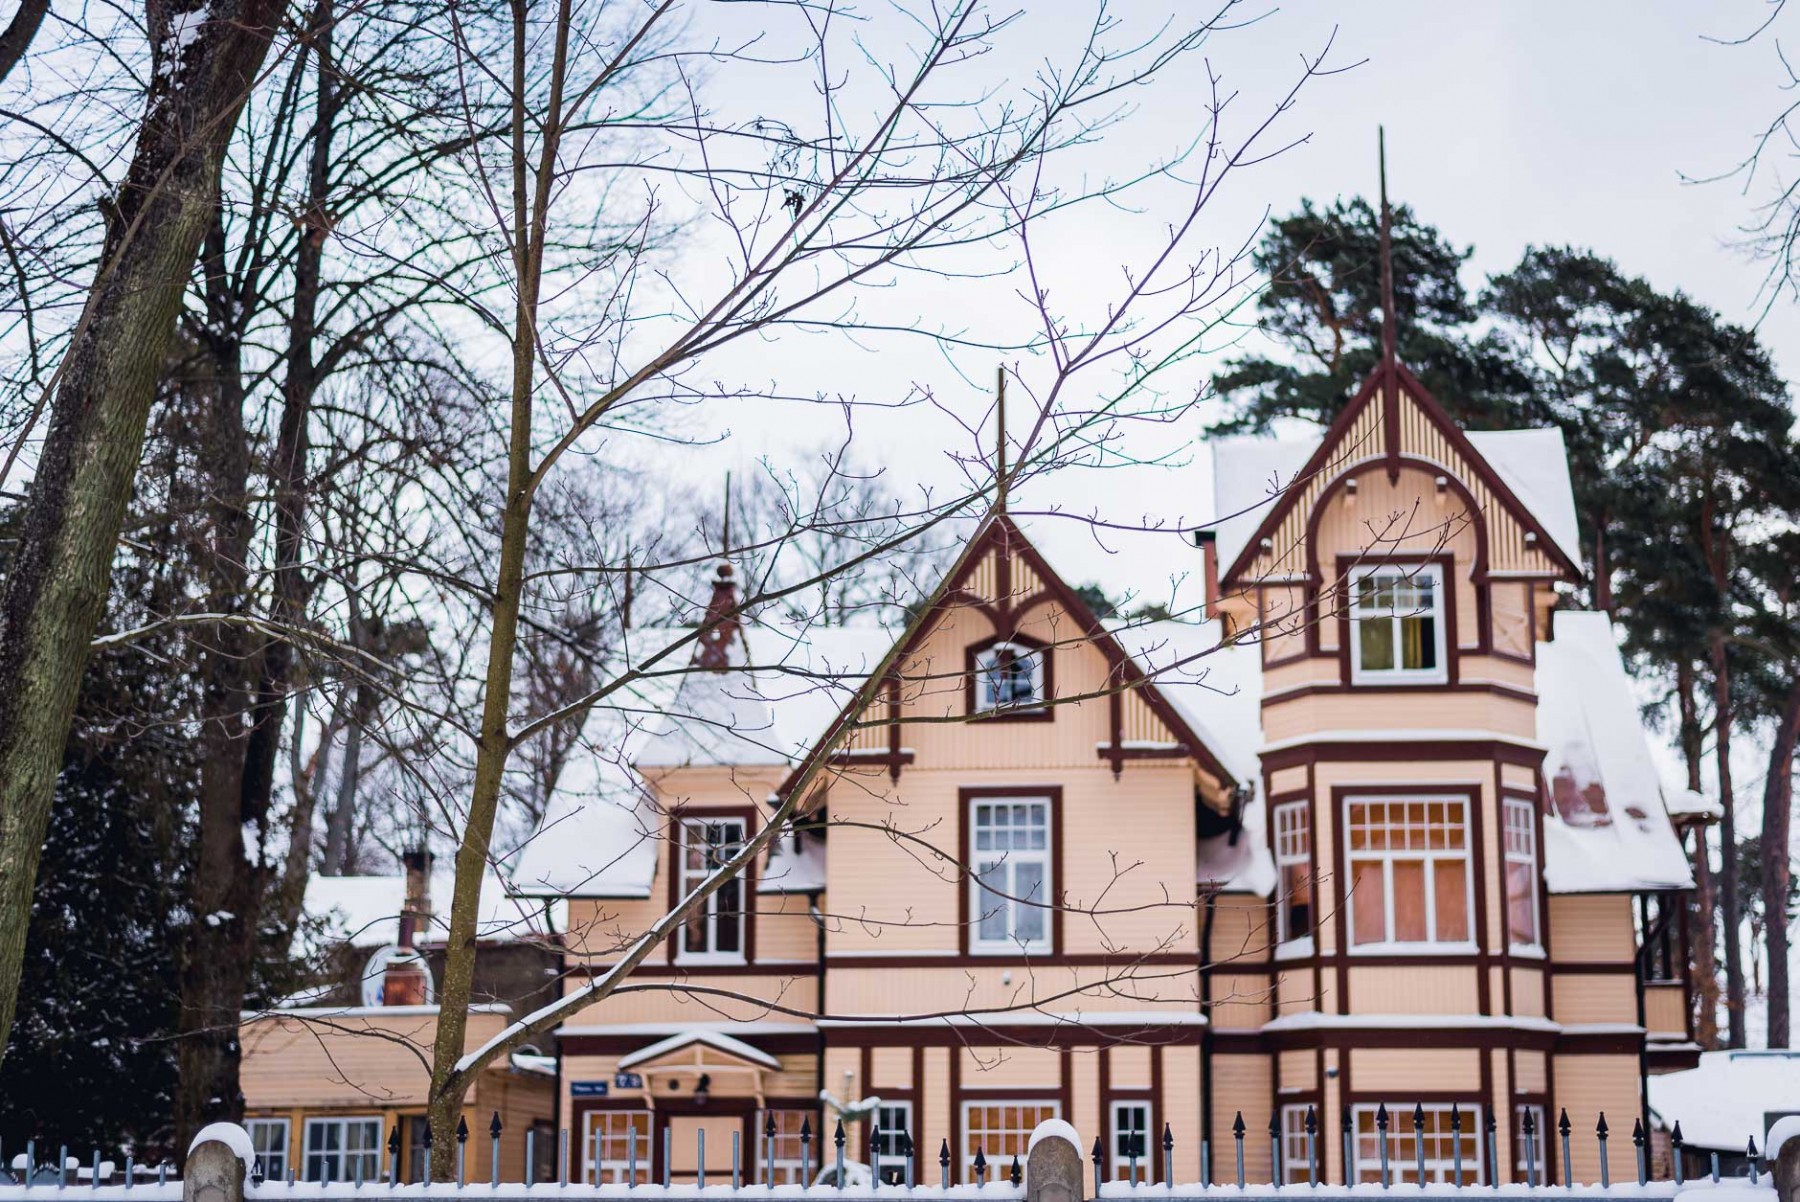 Jurmala, Latvia in January